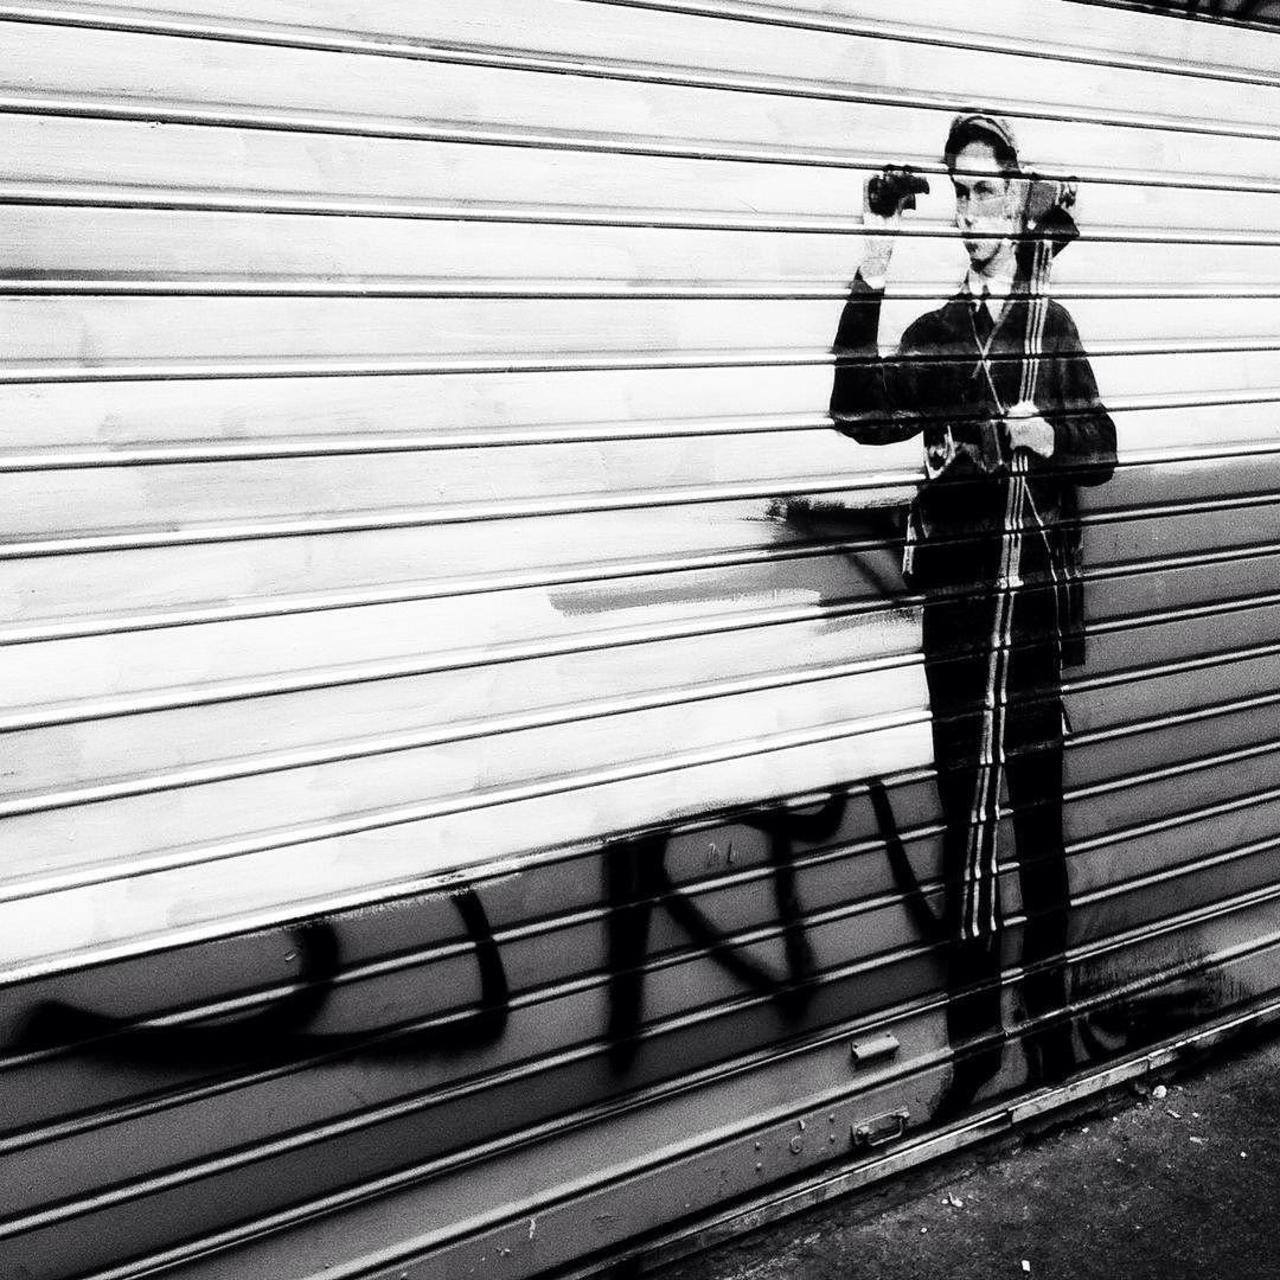 http://ift.tt/1KiqpQt #Paris #graffiti photo by noamzucker http://ift.tt/1ZOxAYG #StreetArt http://t.co/Von4R3P8hP